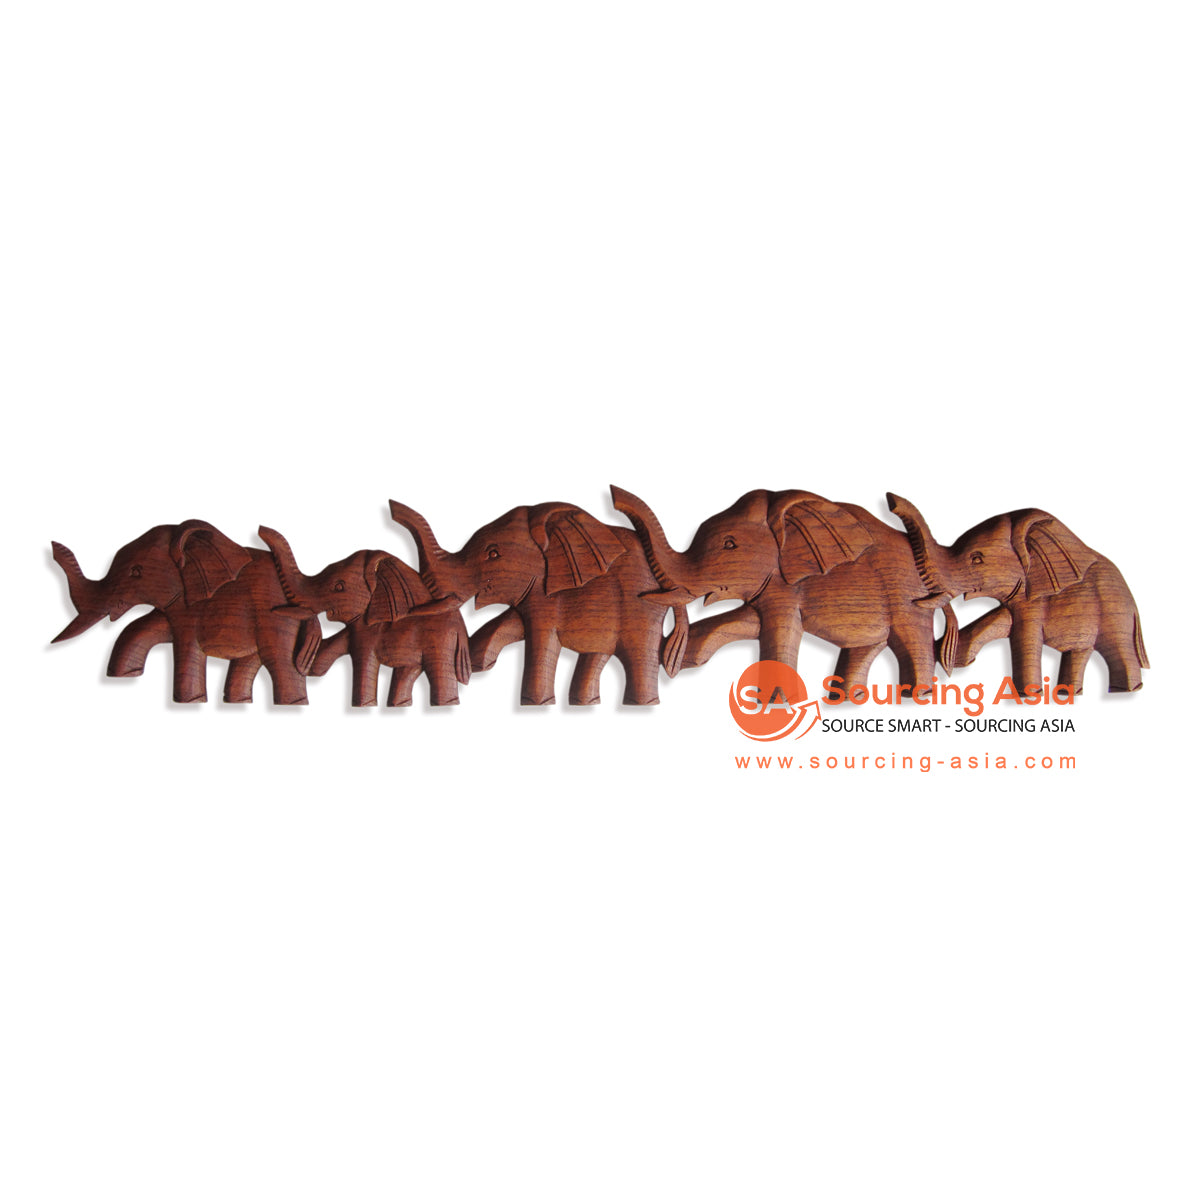 RGL002-100 NATURAL WOODEN ELEPHANTS CARVED PANEL